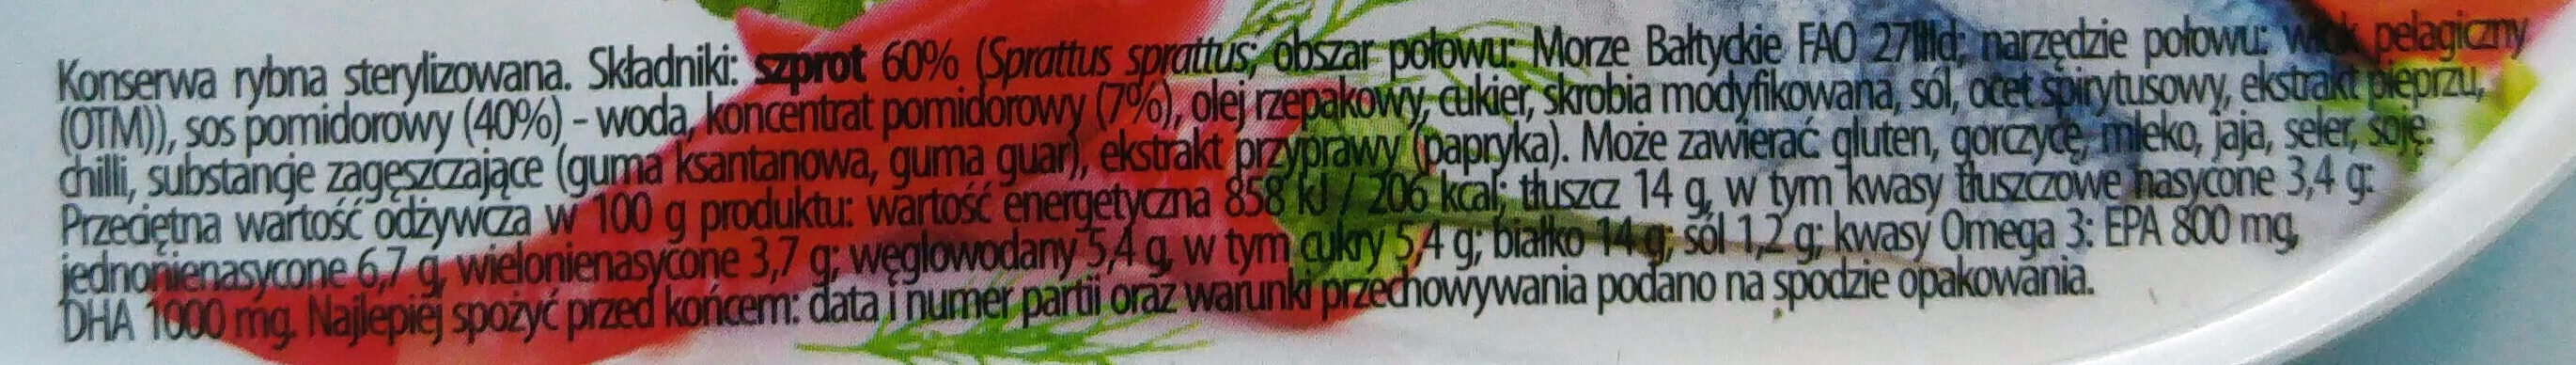 Szprot w pikantnym sosie pomidorowym. - Ingrédients - pl